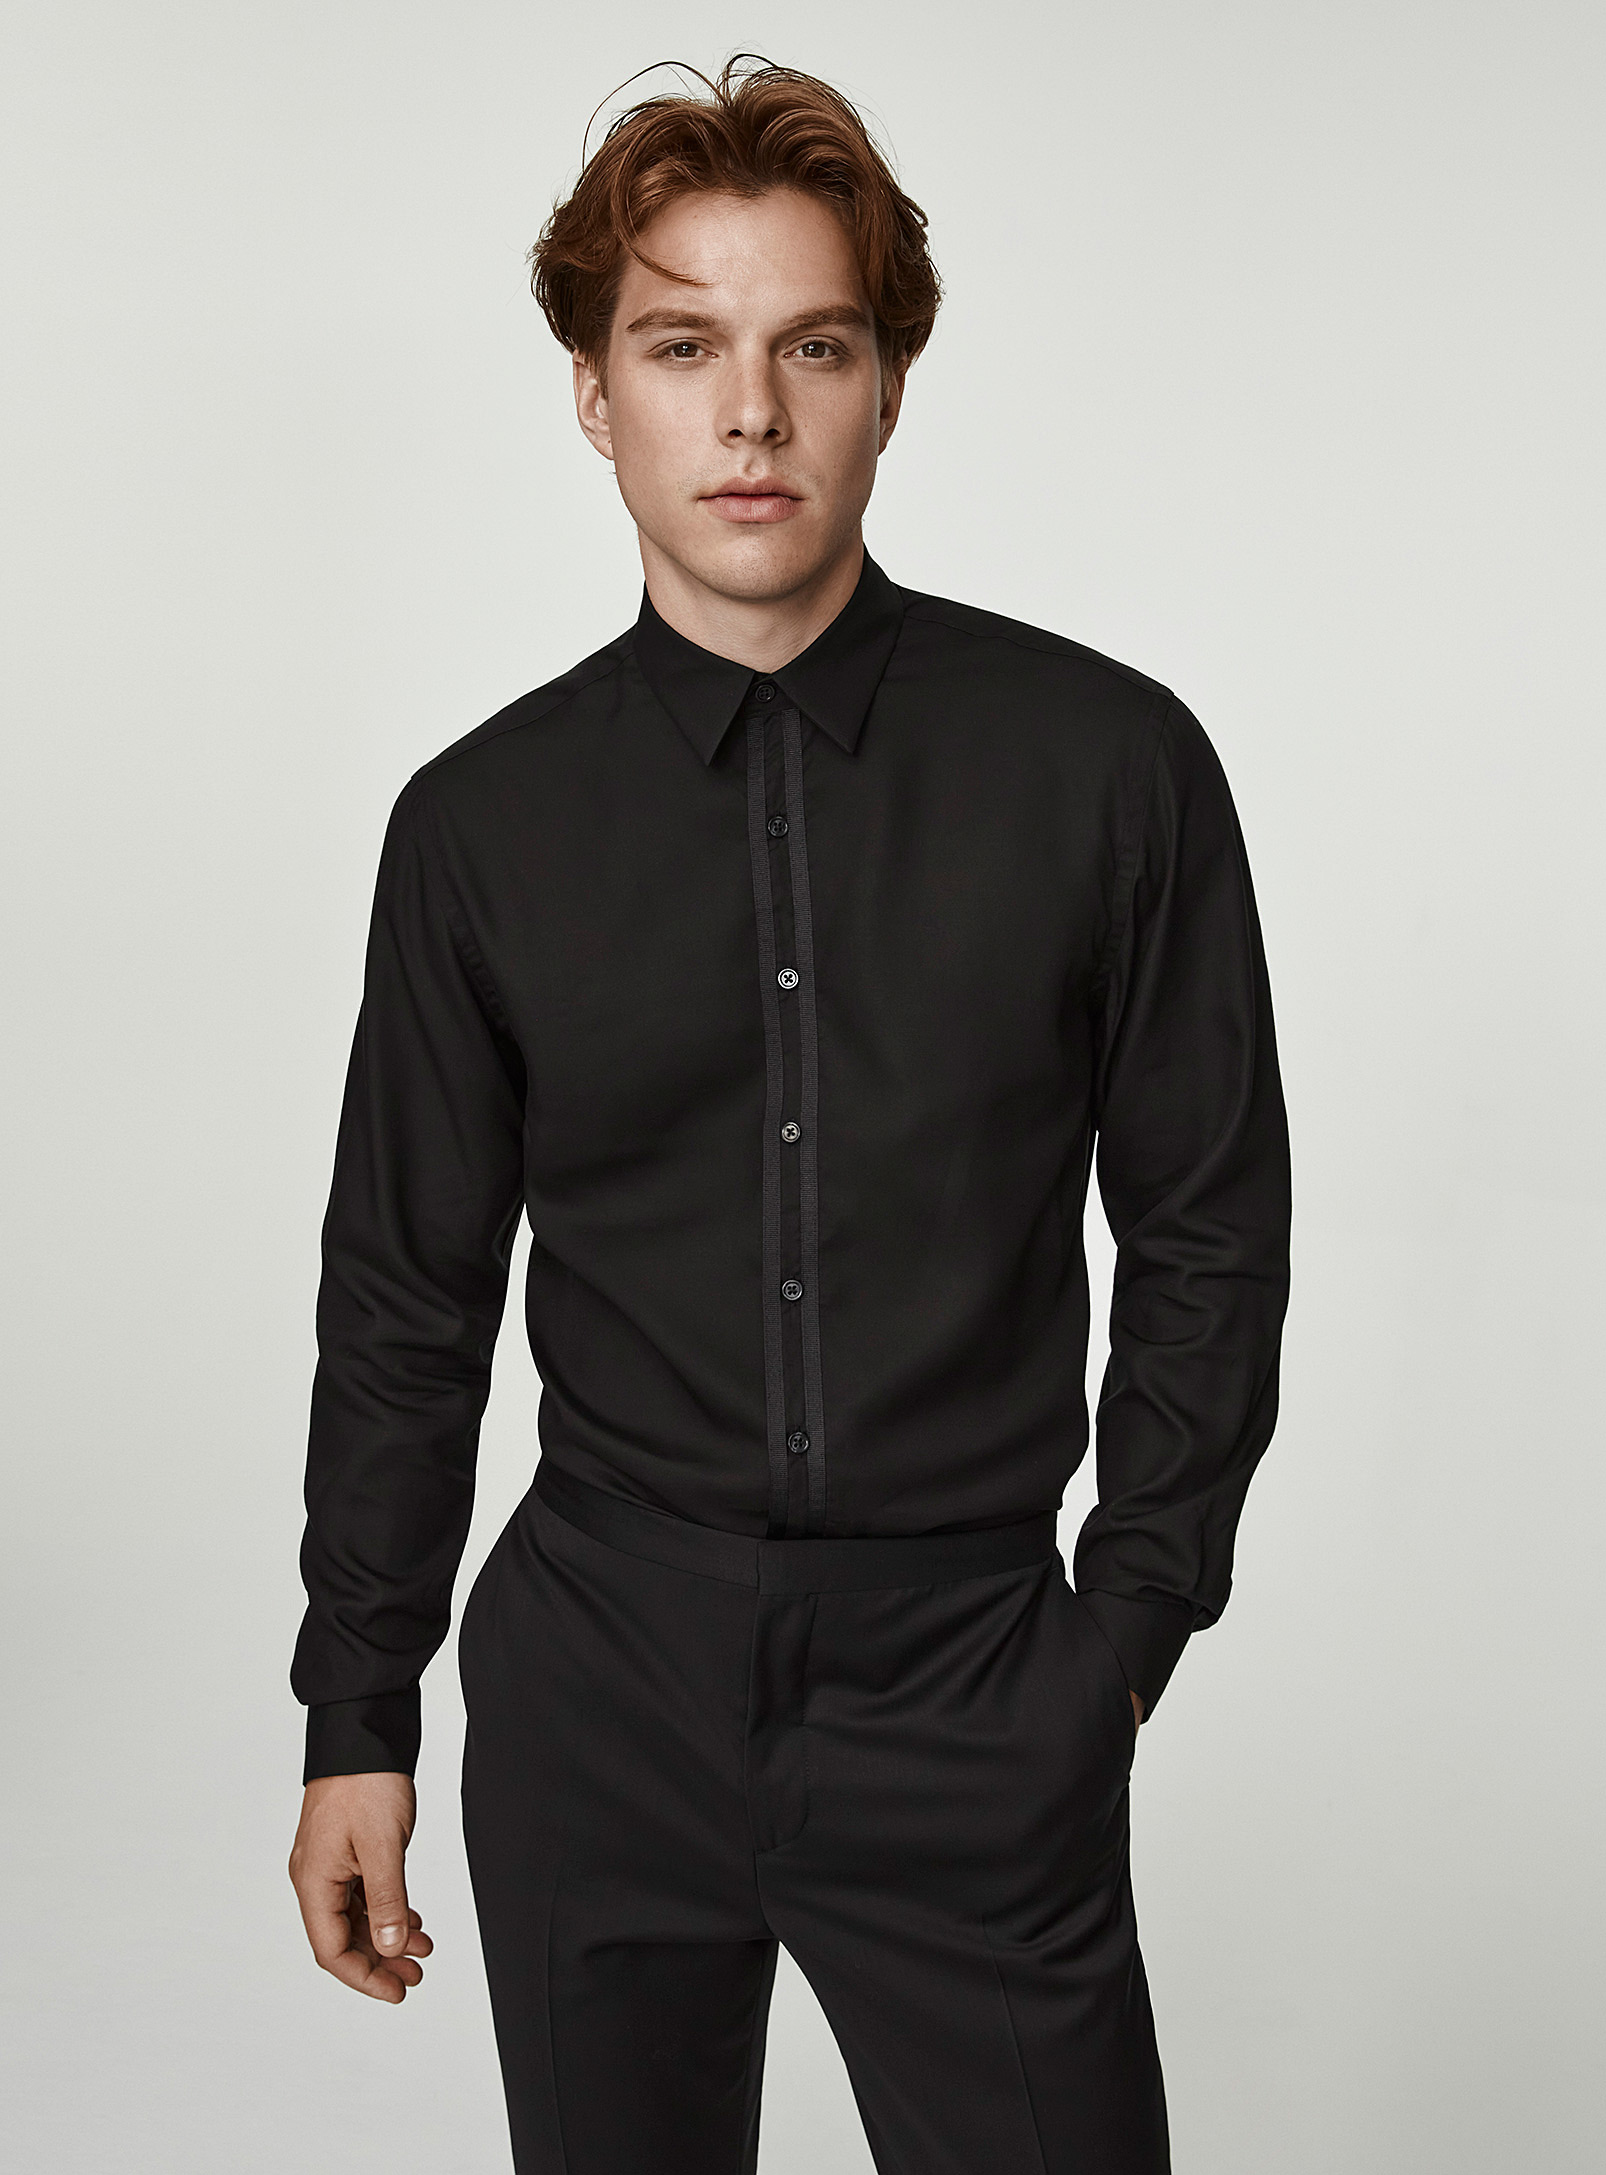 Le 31 - Men's Monochrome trim tuxedo shirt Modern fit